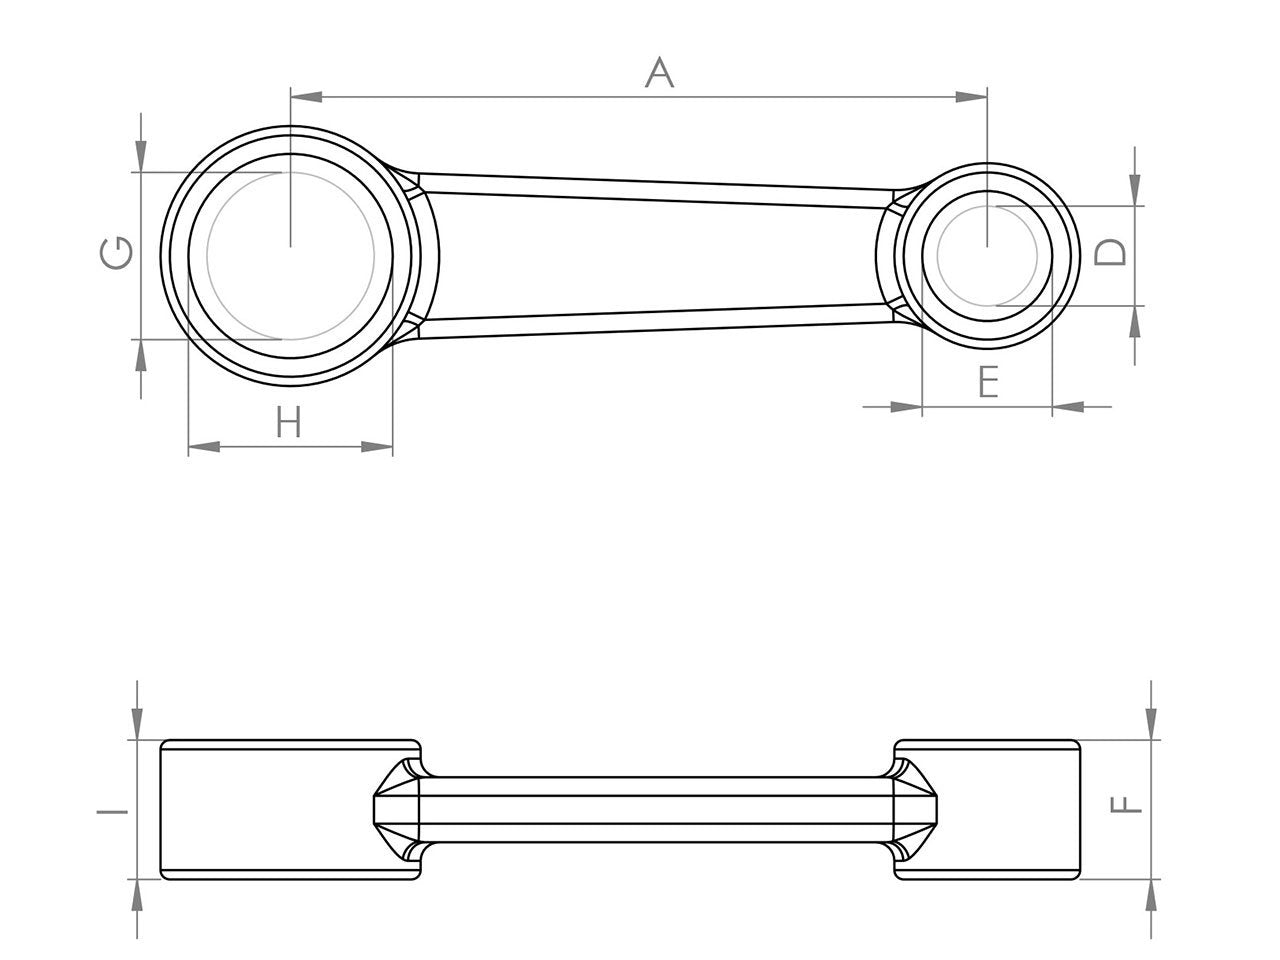 Zeichnung Barikit Pleuel für einen Yamaha DT 50 Motor mit Bemaßung.